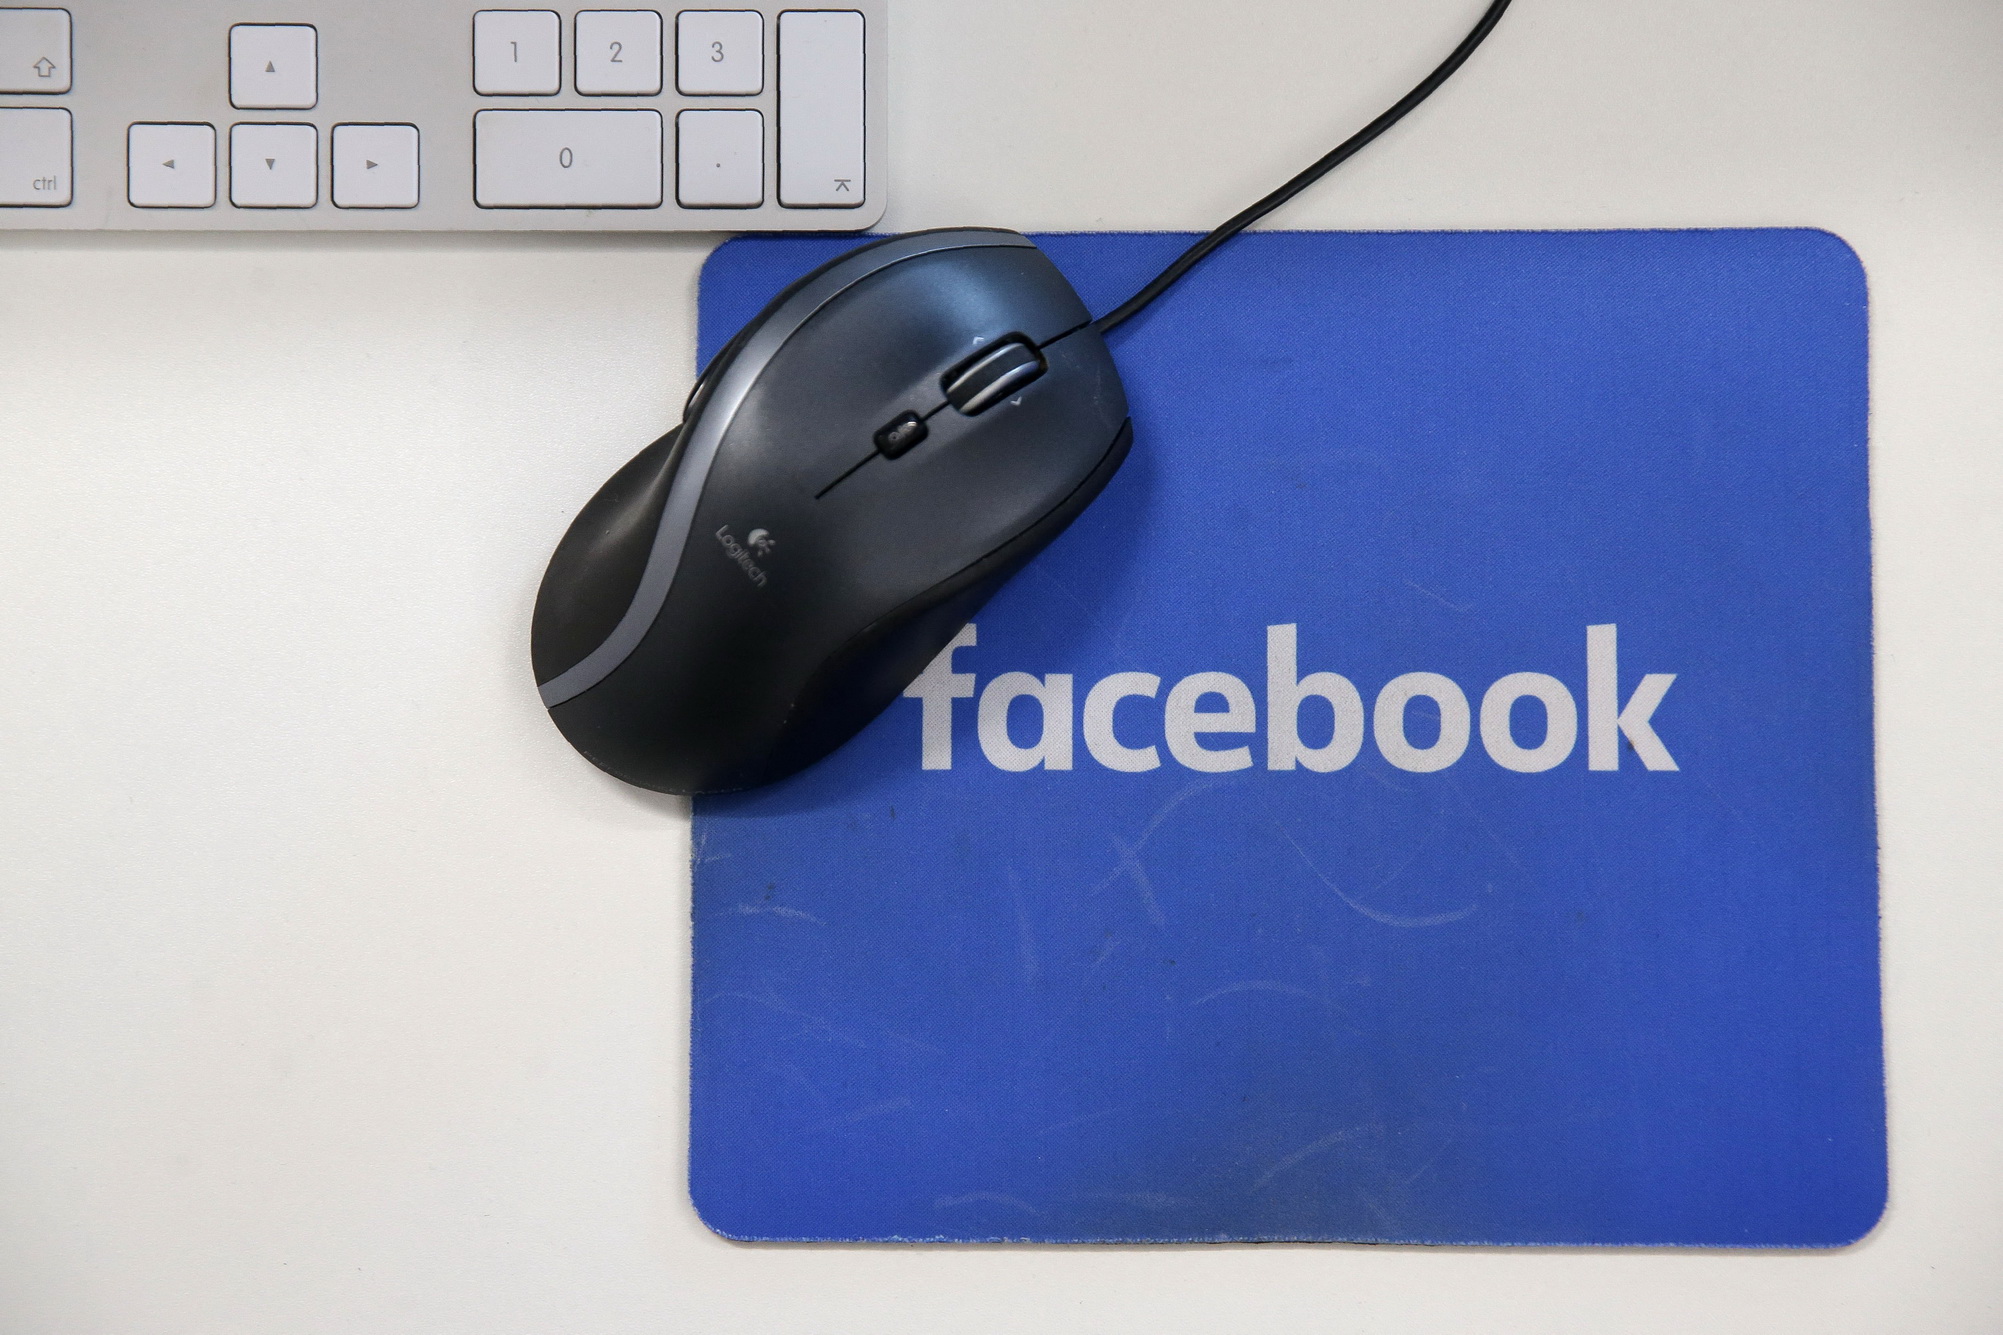 Biểu tượng Facebook trên một tấm lót chuột máy tính ở London, Anh. (Ảnh: AFP/TTXVN)